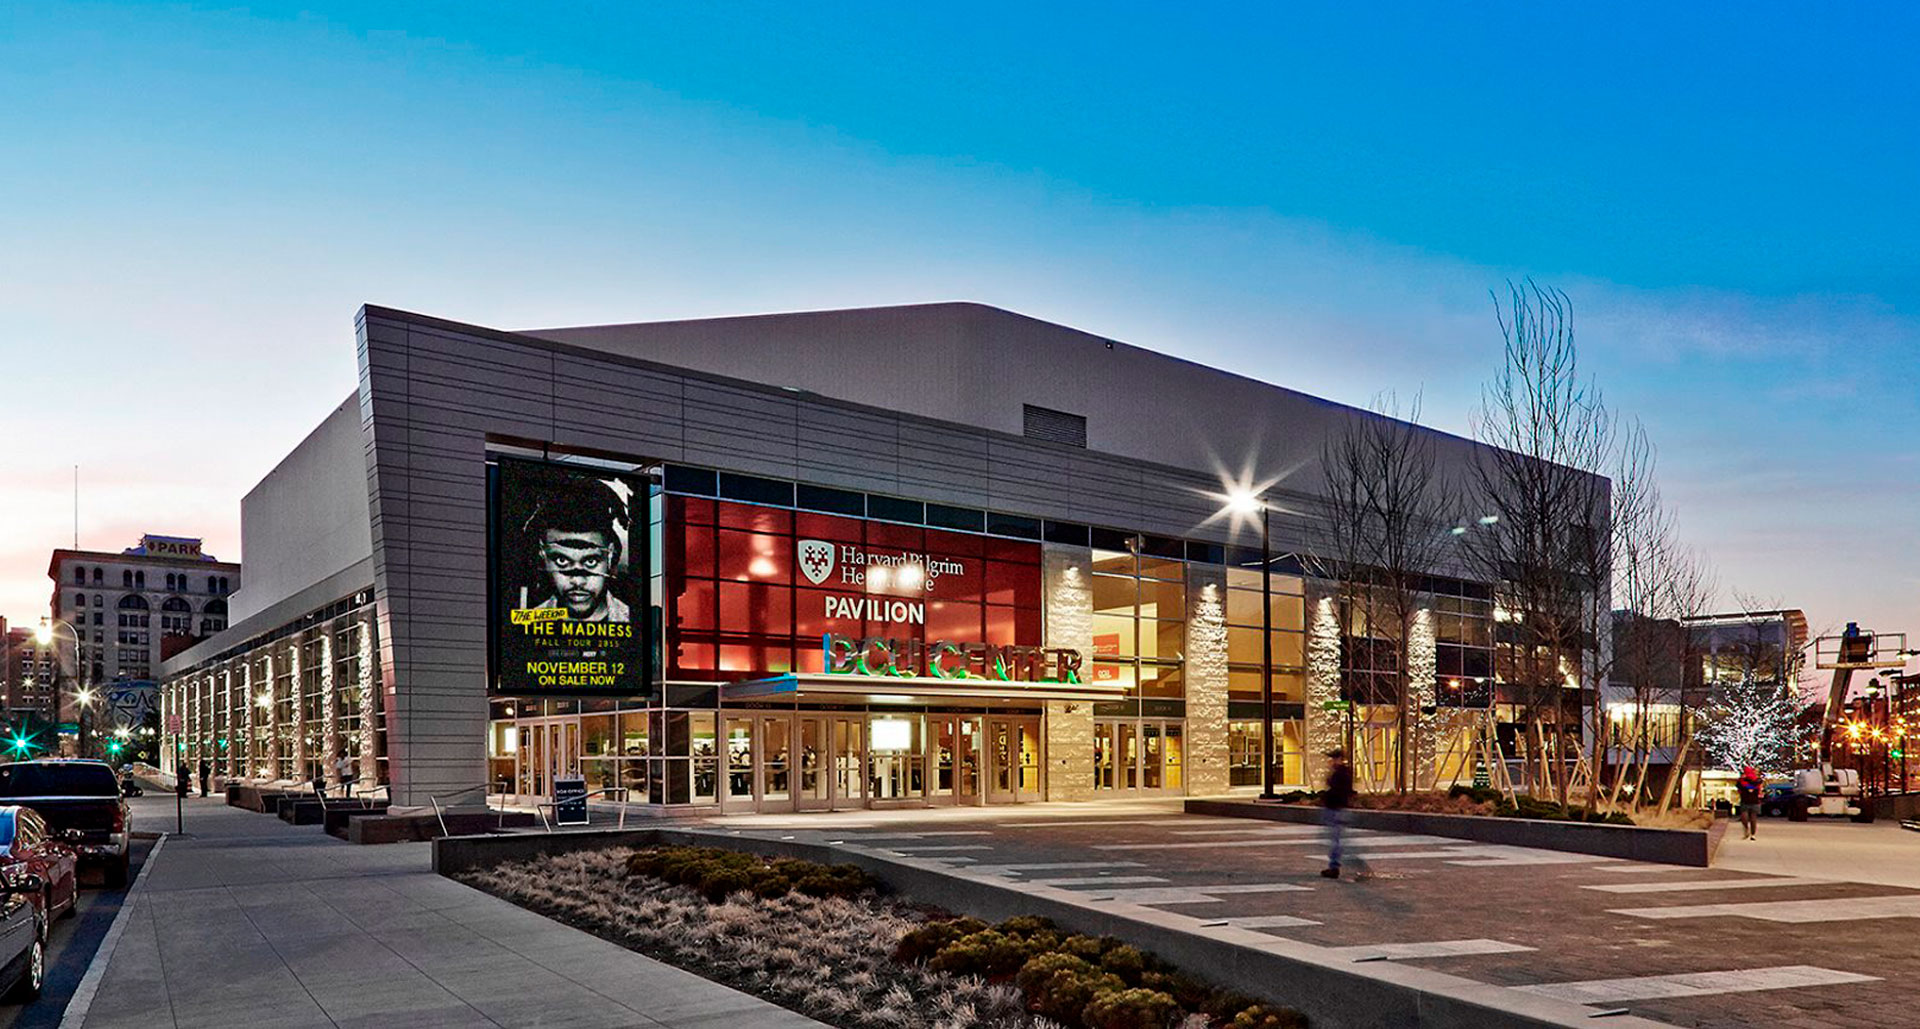 DCU Center Arena